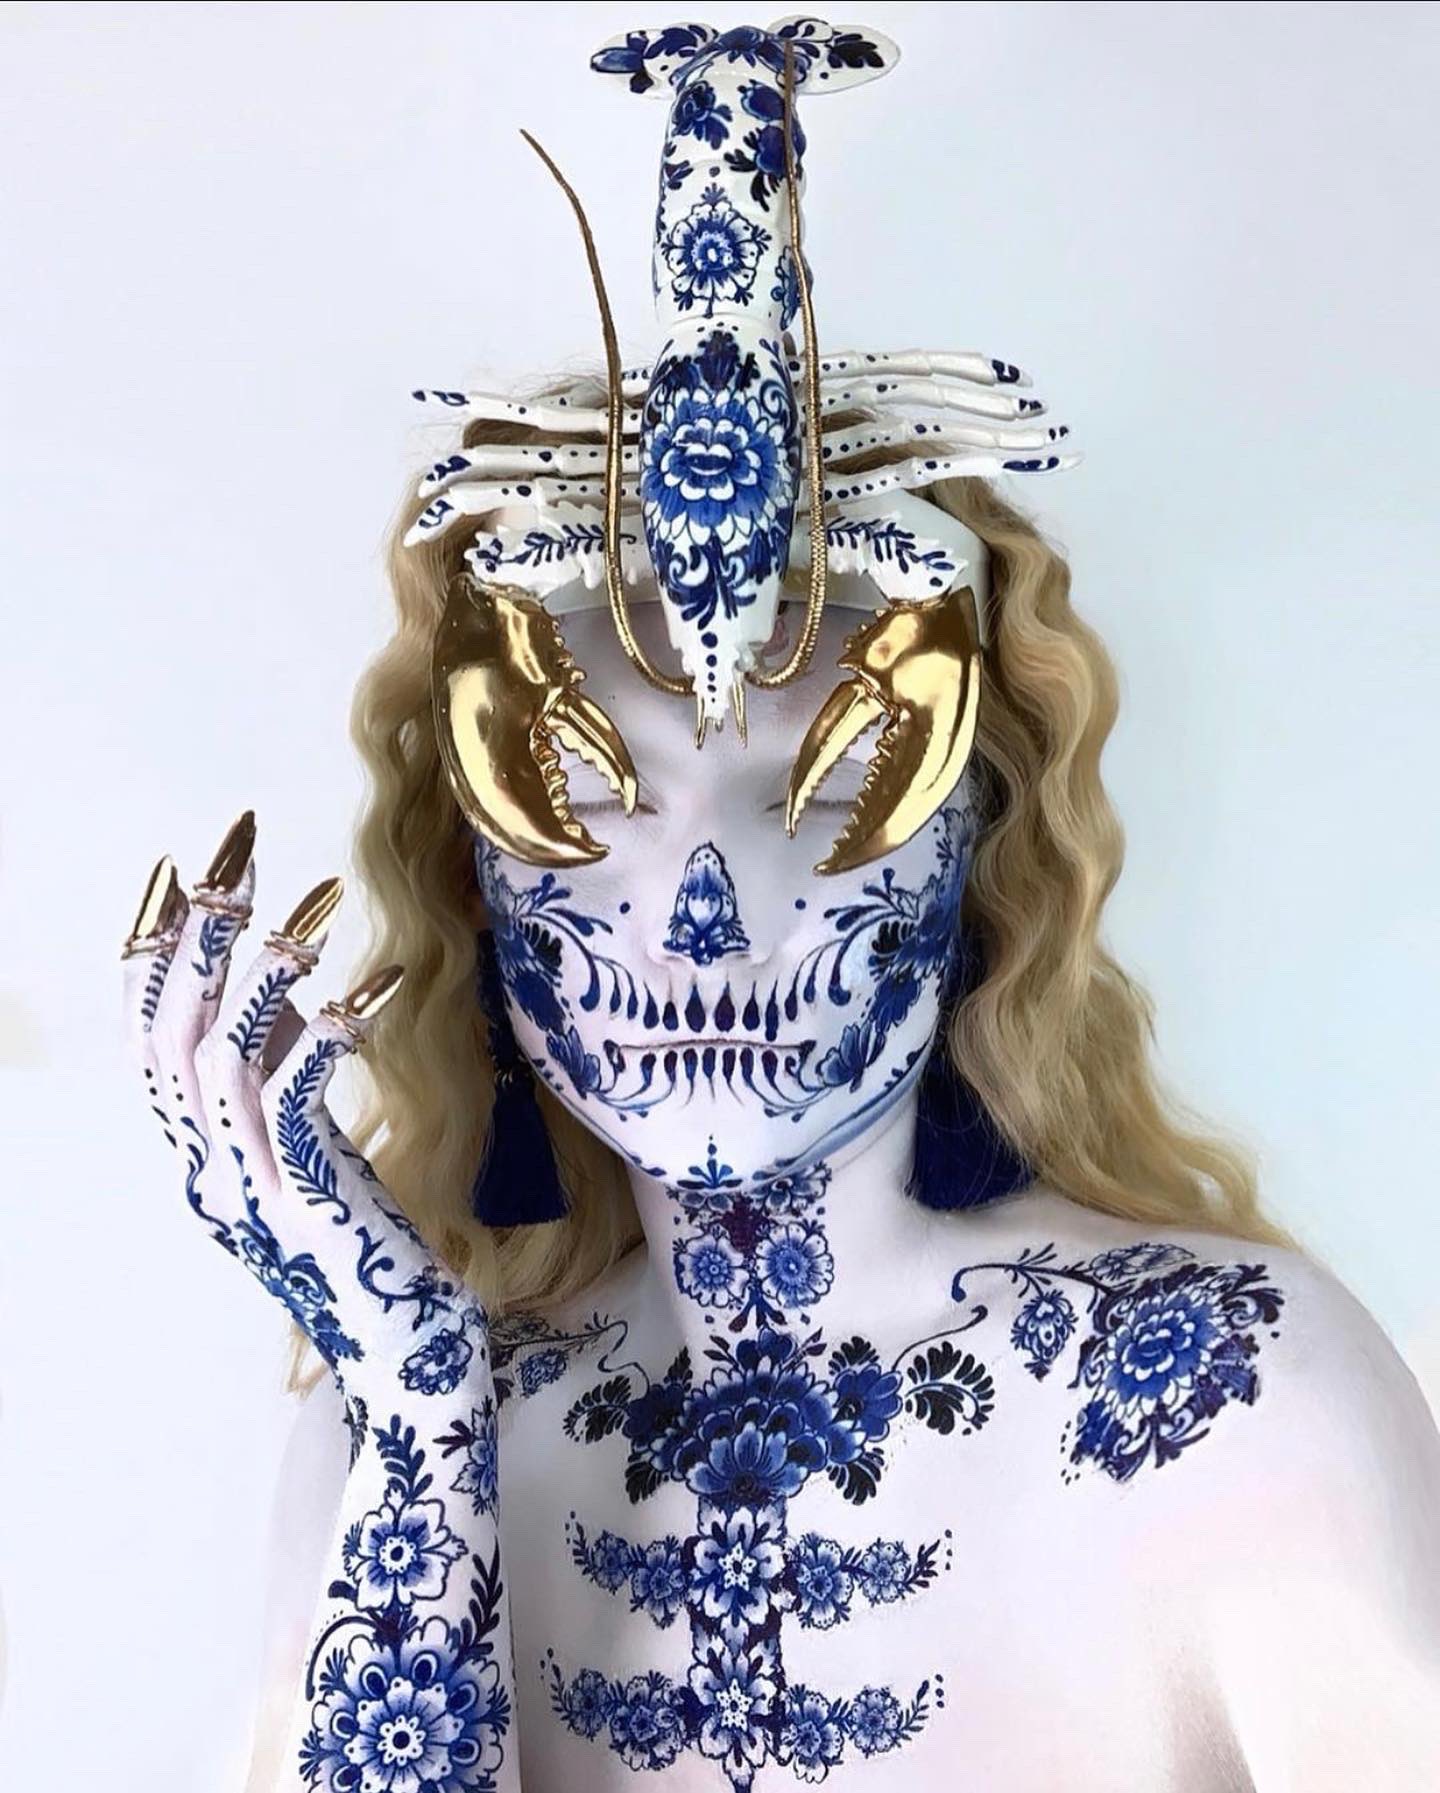 The Skulltress - Vanessa Davis - LV Floral Skull Mannequin